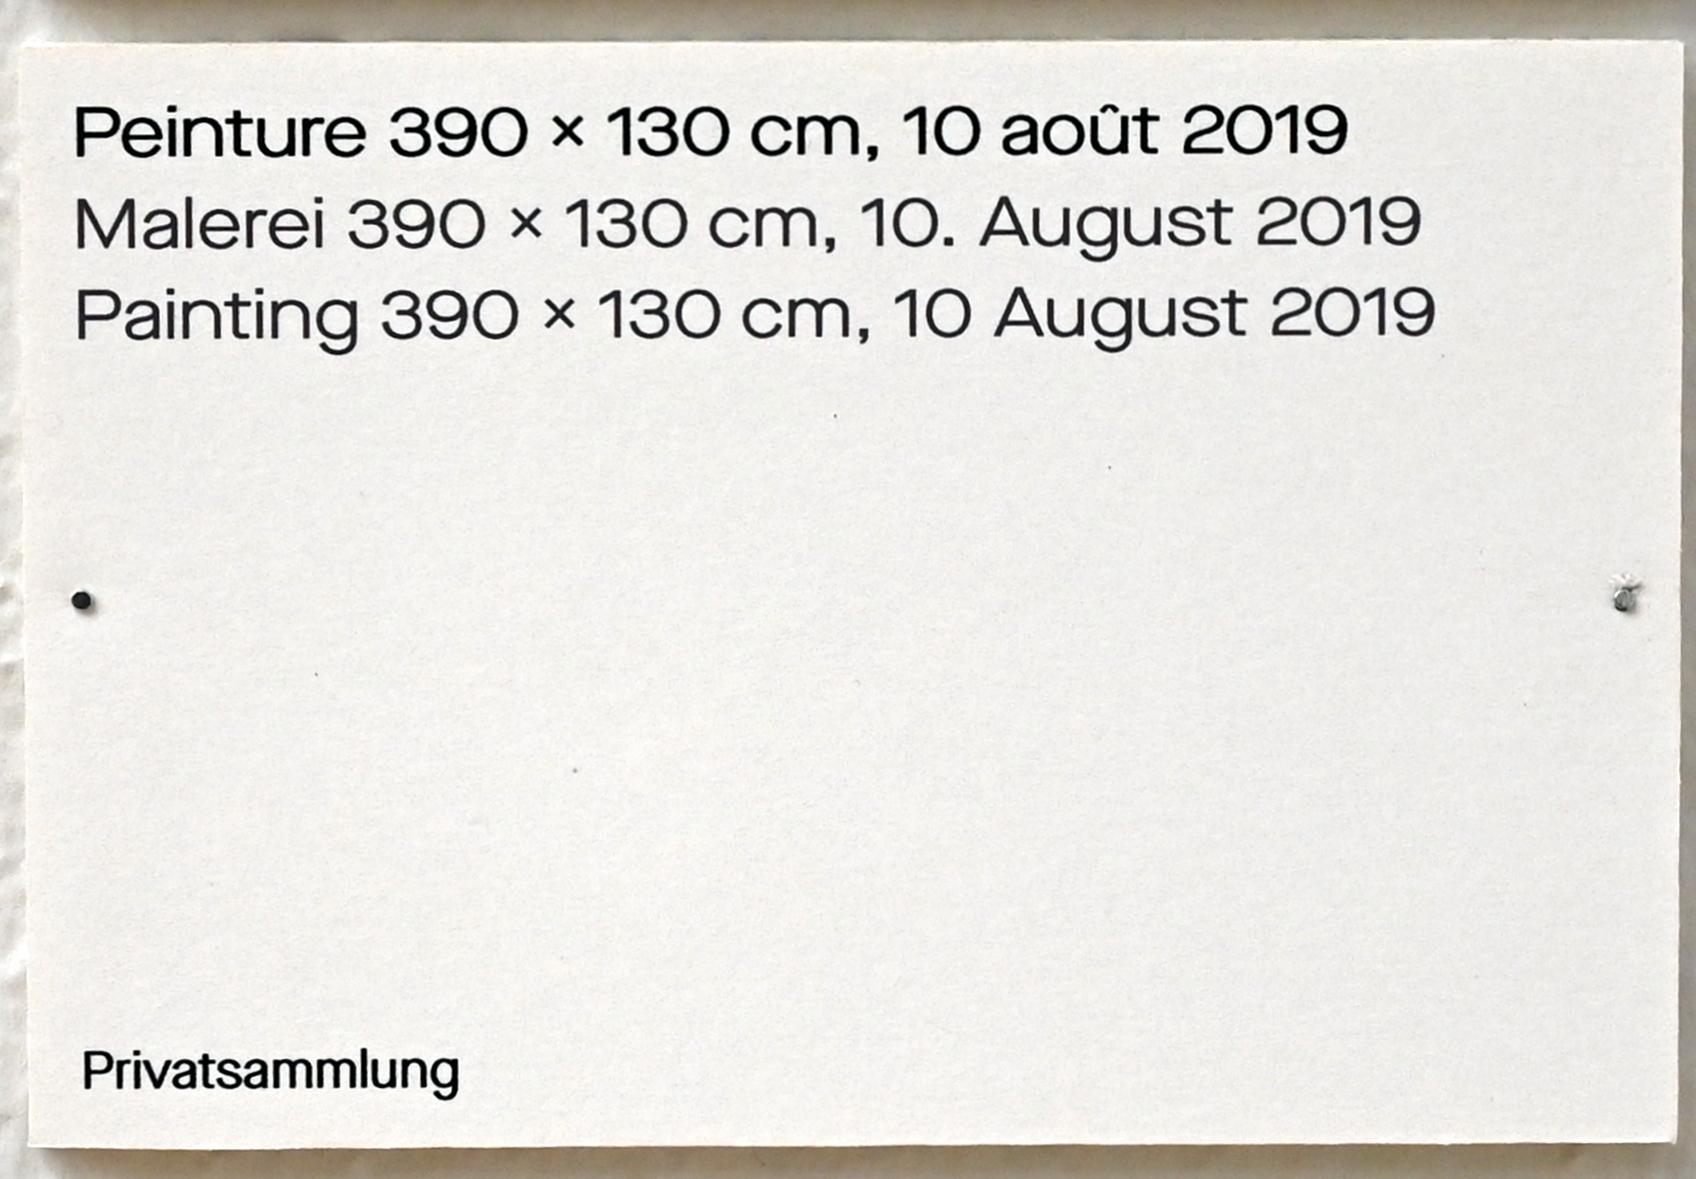 Pierre Soulages (1946–2019), Malerei 390 x 130 cm, 10. August 2019, Chemnitz, Kunstsammlungen am Theaterplatz, Ausstellung "Soulages" vom 28.03.-25.07.2021, Saal 1, 2019, Bild 2/2